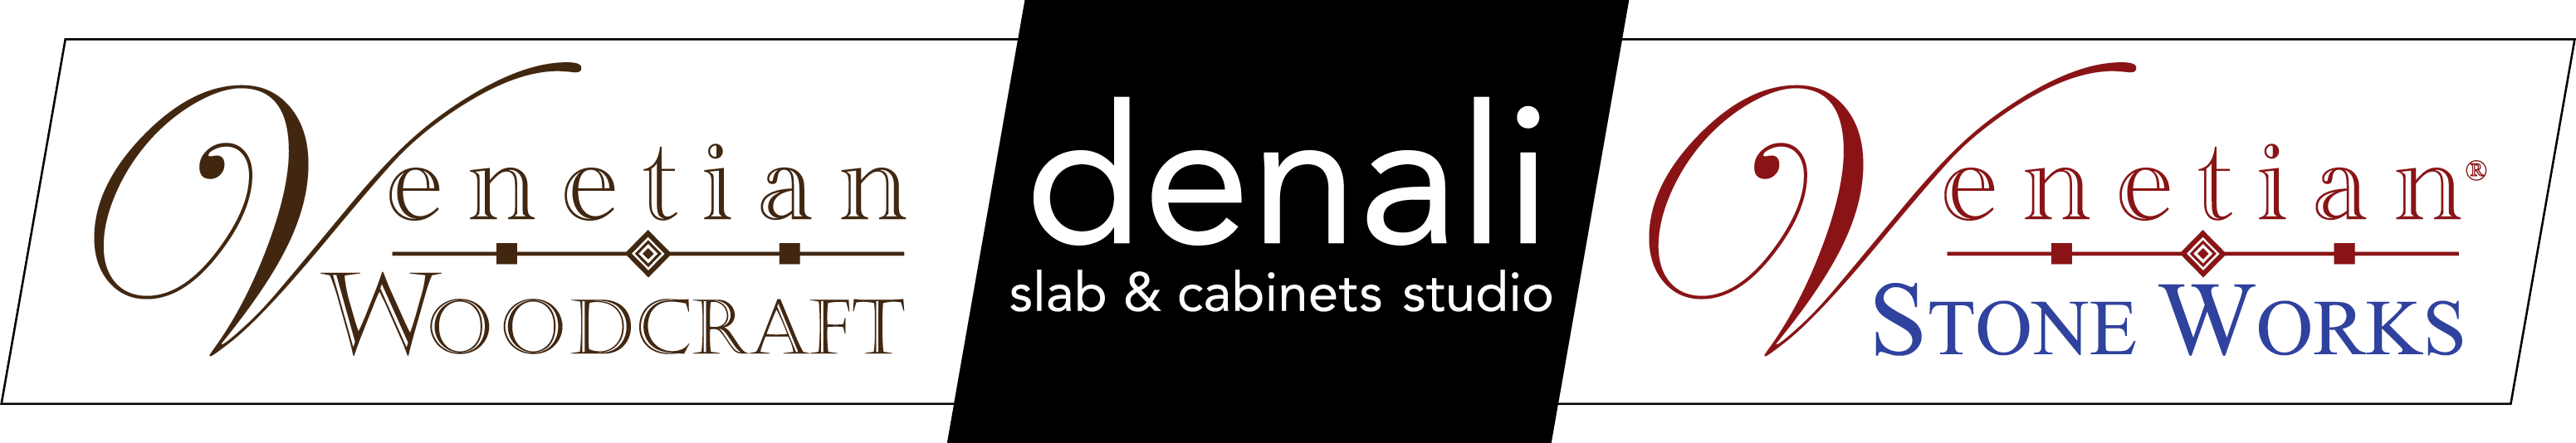 Denali Slab & Cabinet Studio